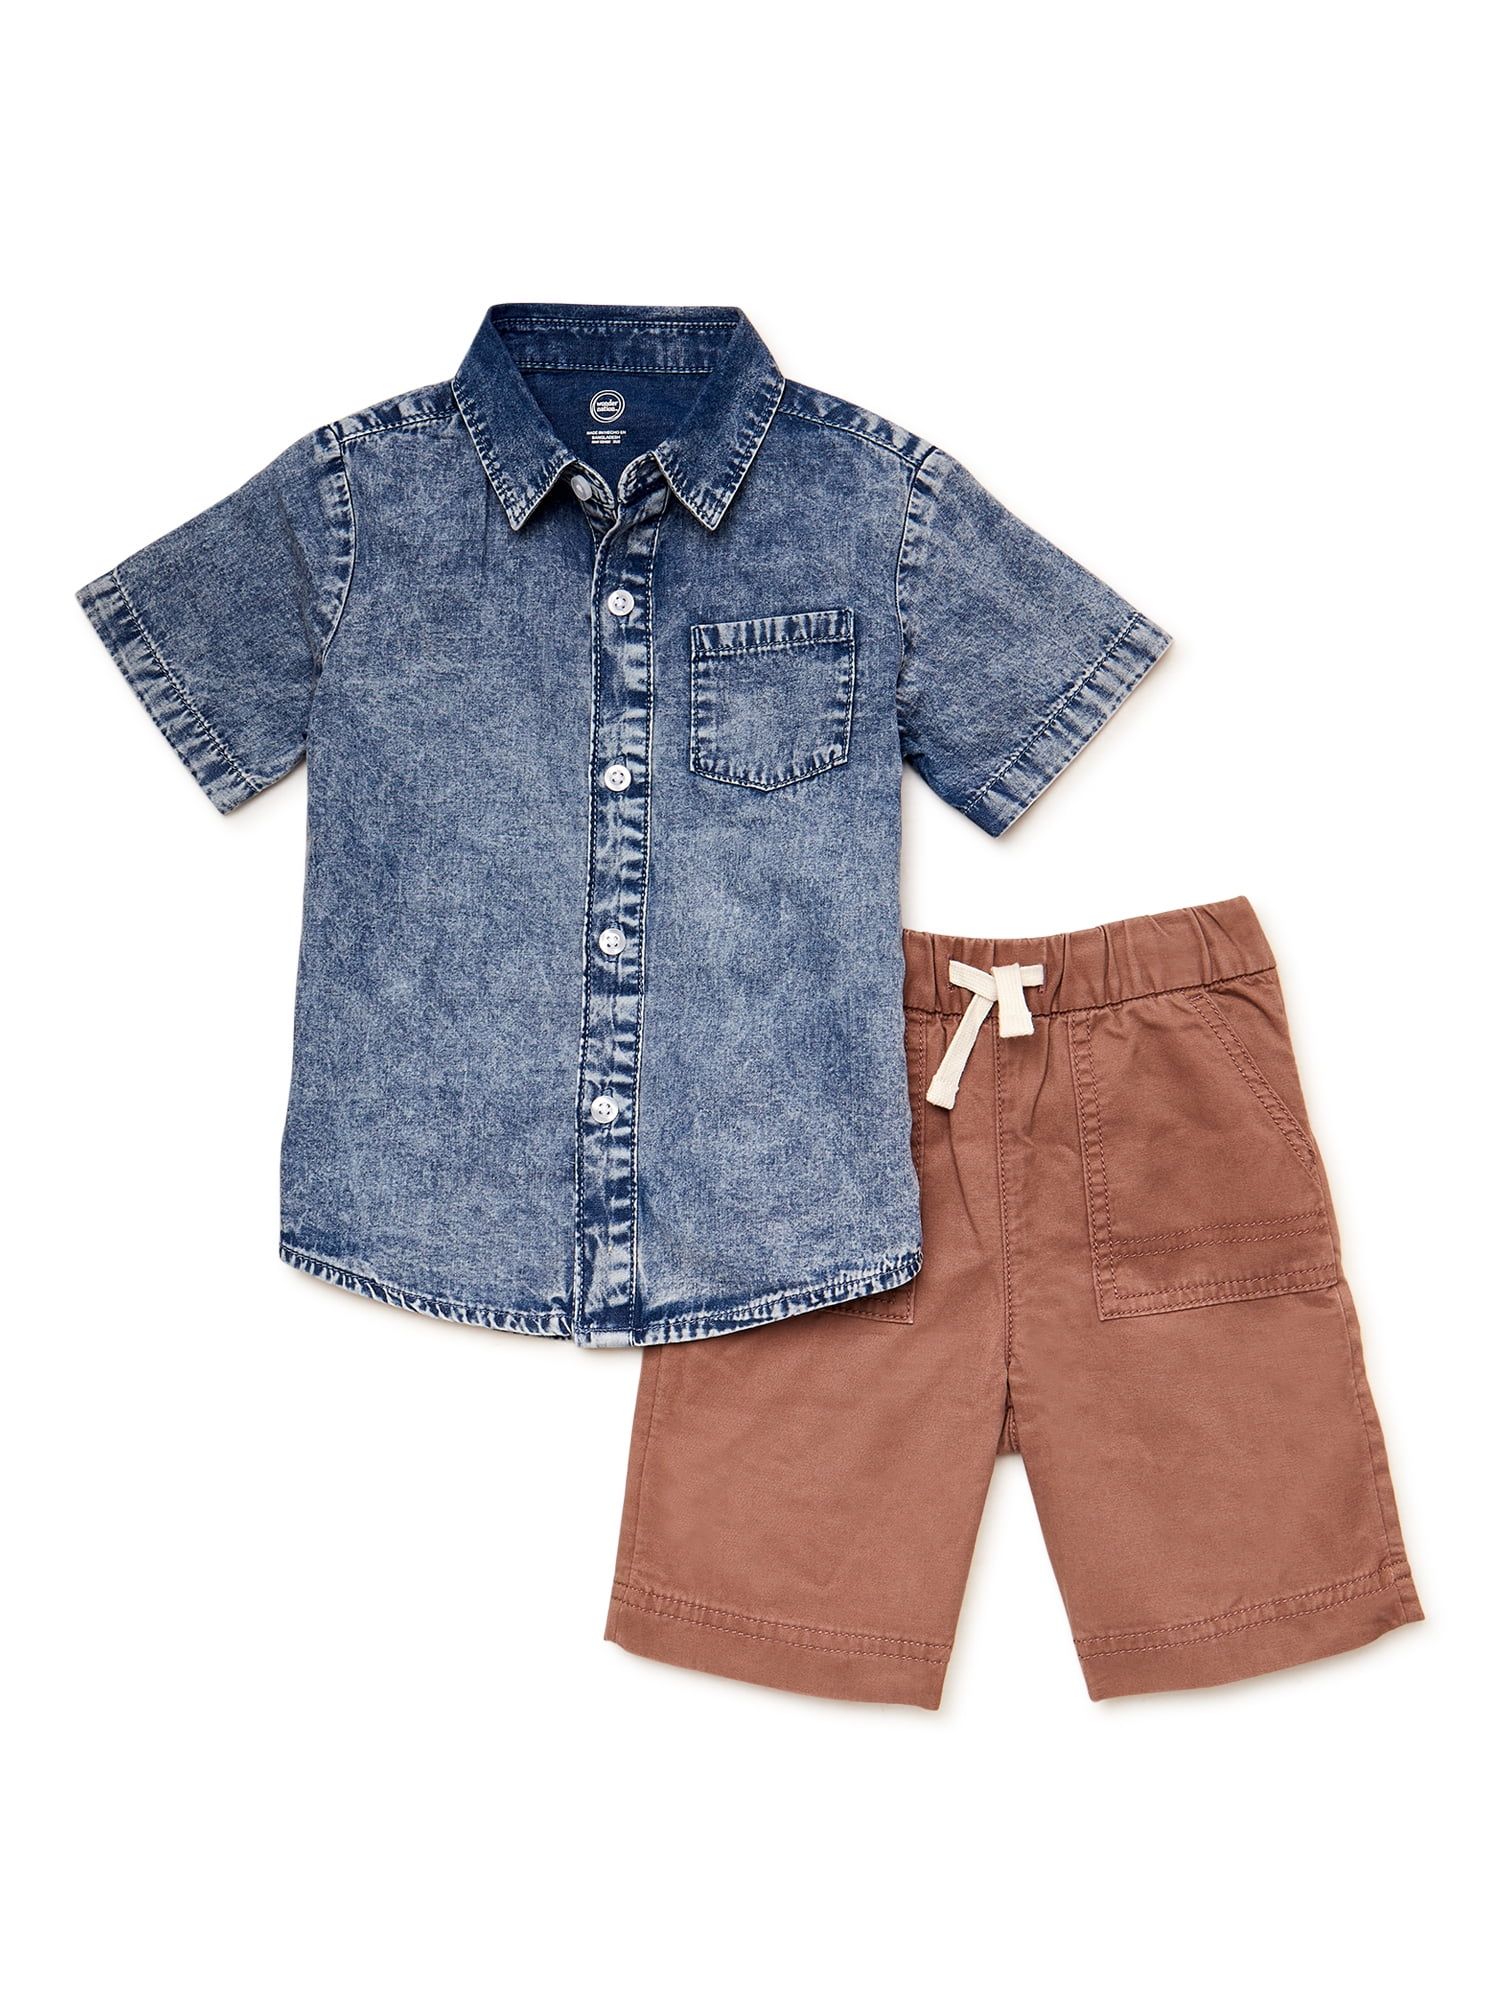 Wonder Nation Toddler Boy's Short Sleeve Set, 2 Piece, Sizes 12 Months - 5T | Walmart (US)